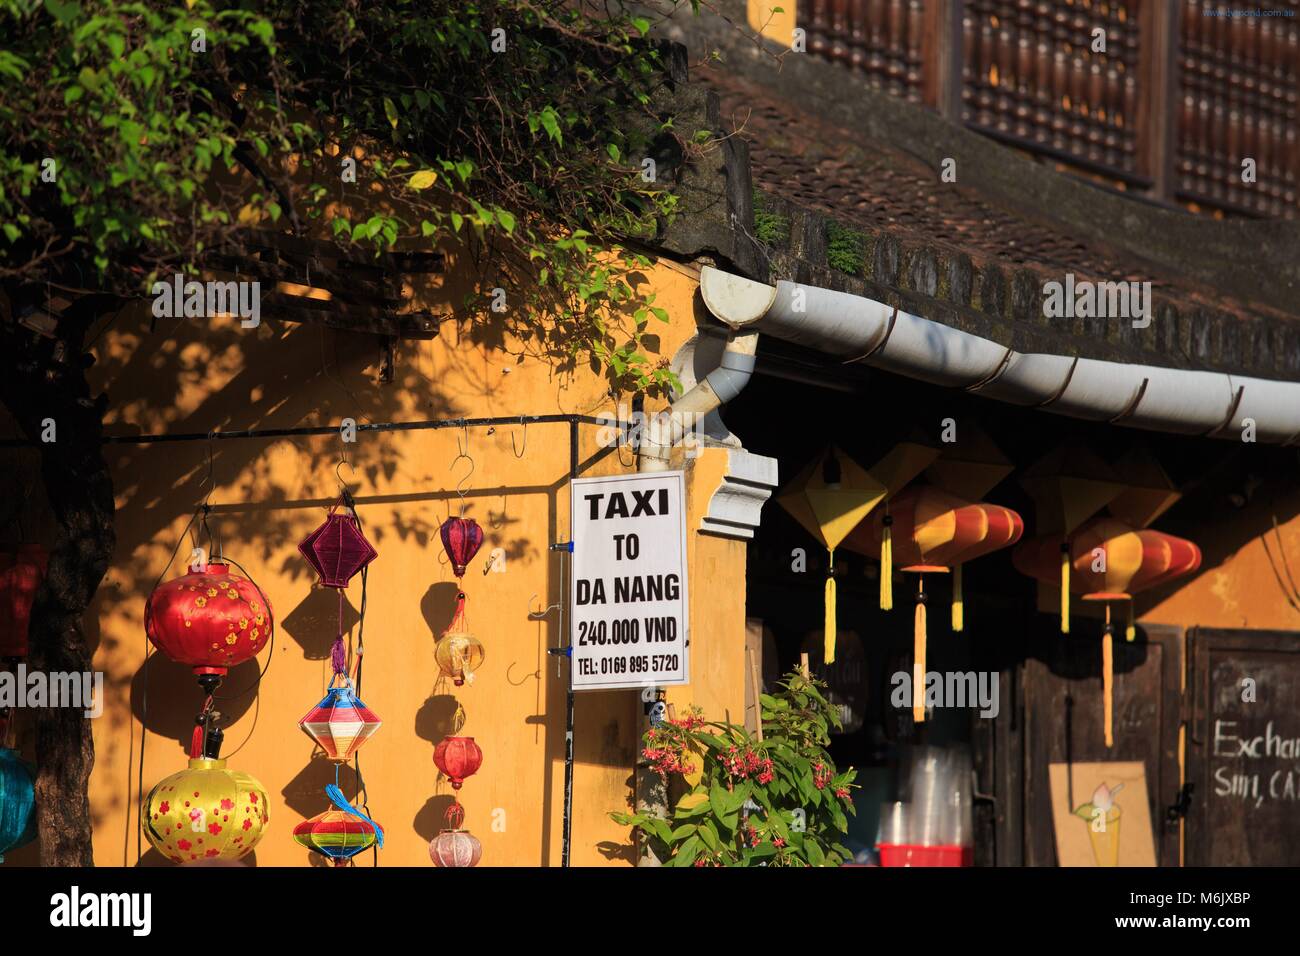 Leuchtend gelbe Wände, bunte Laternen und Schiefer Dächer sind Merkmale der Altstadt von Hoi An, Vietnam Stockfoto